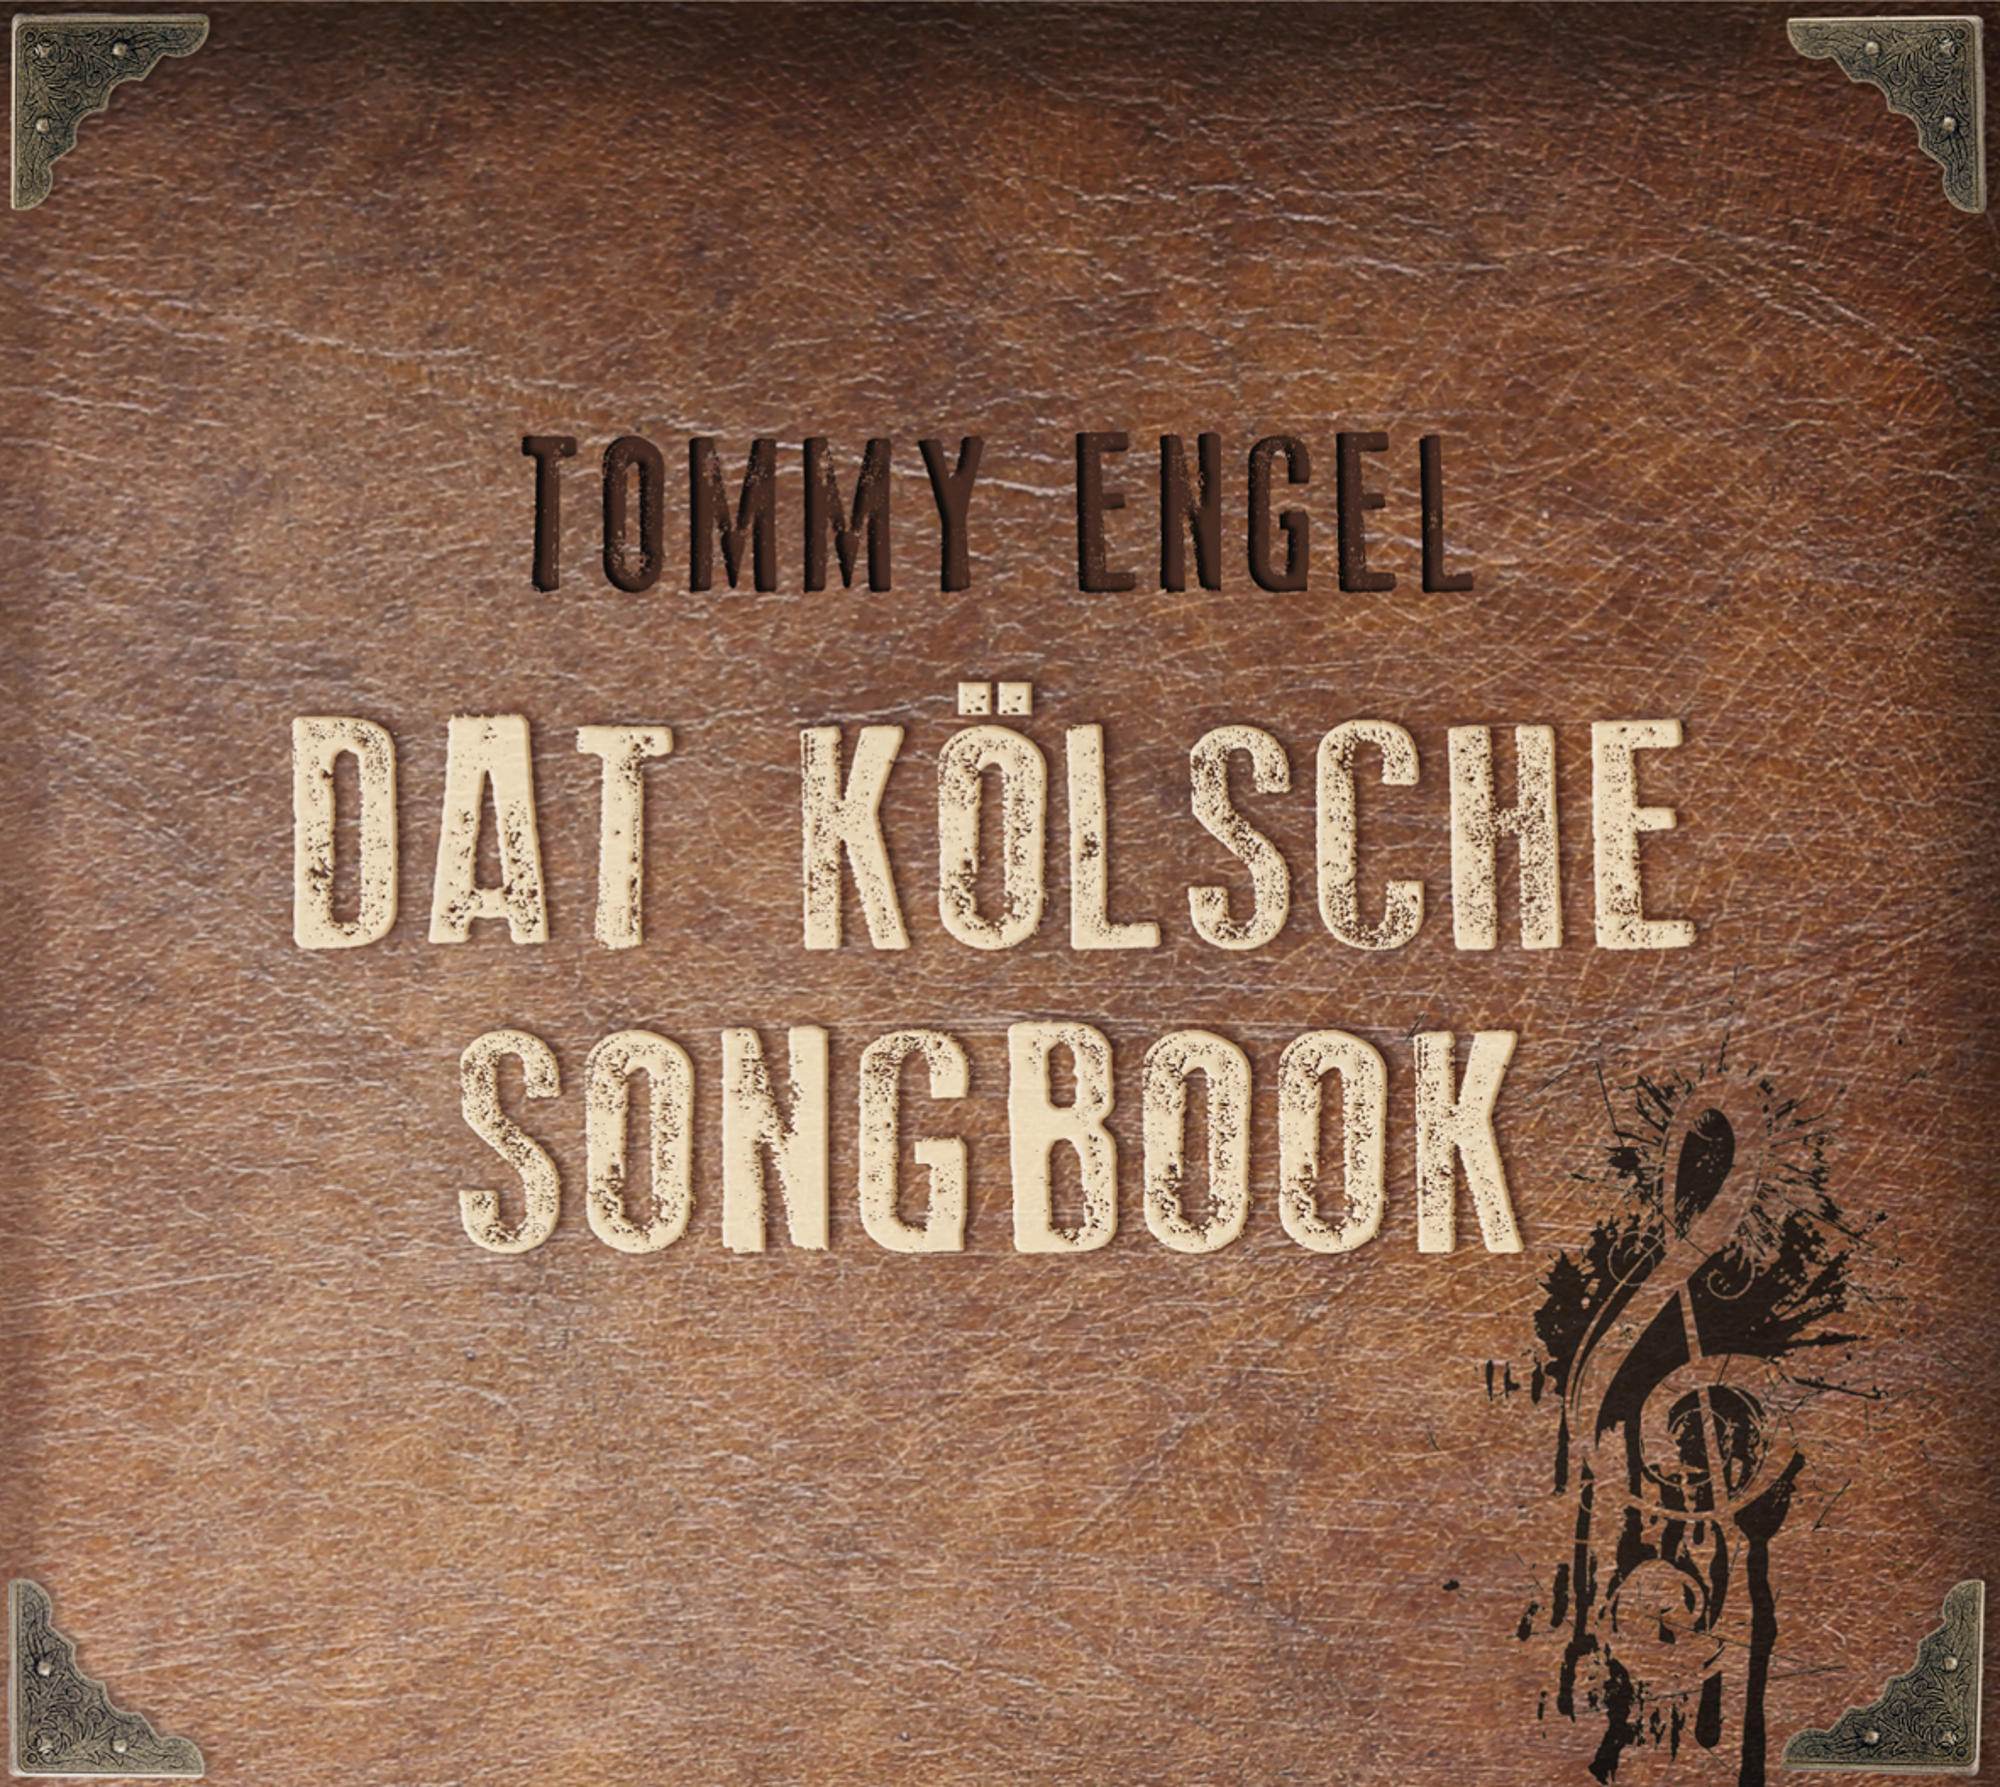 - Dat Tommy (CD) kölsche Songbook - Engel